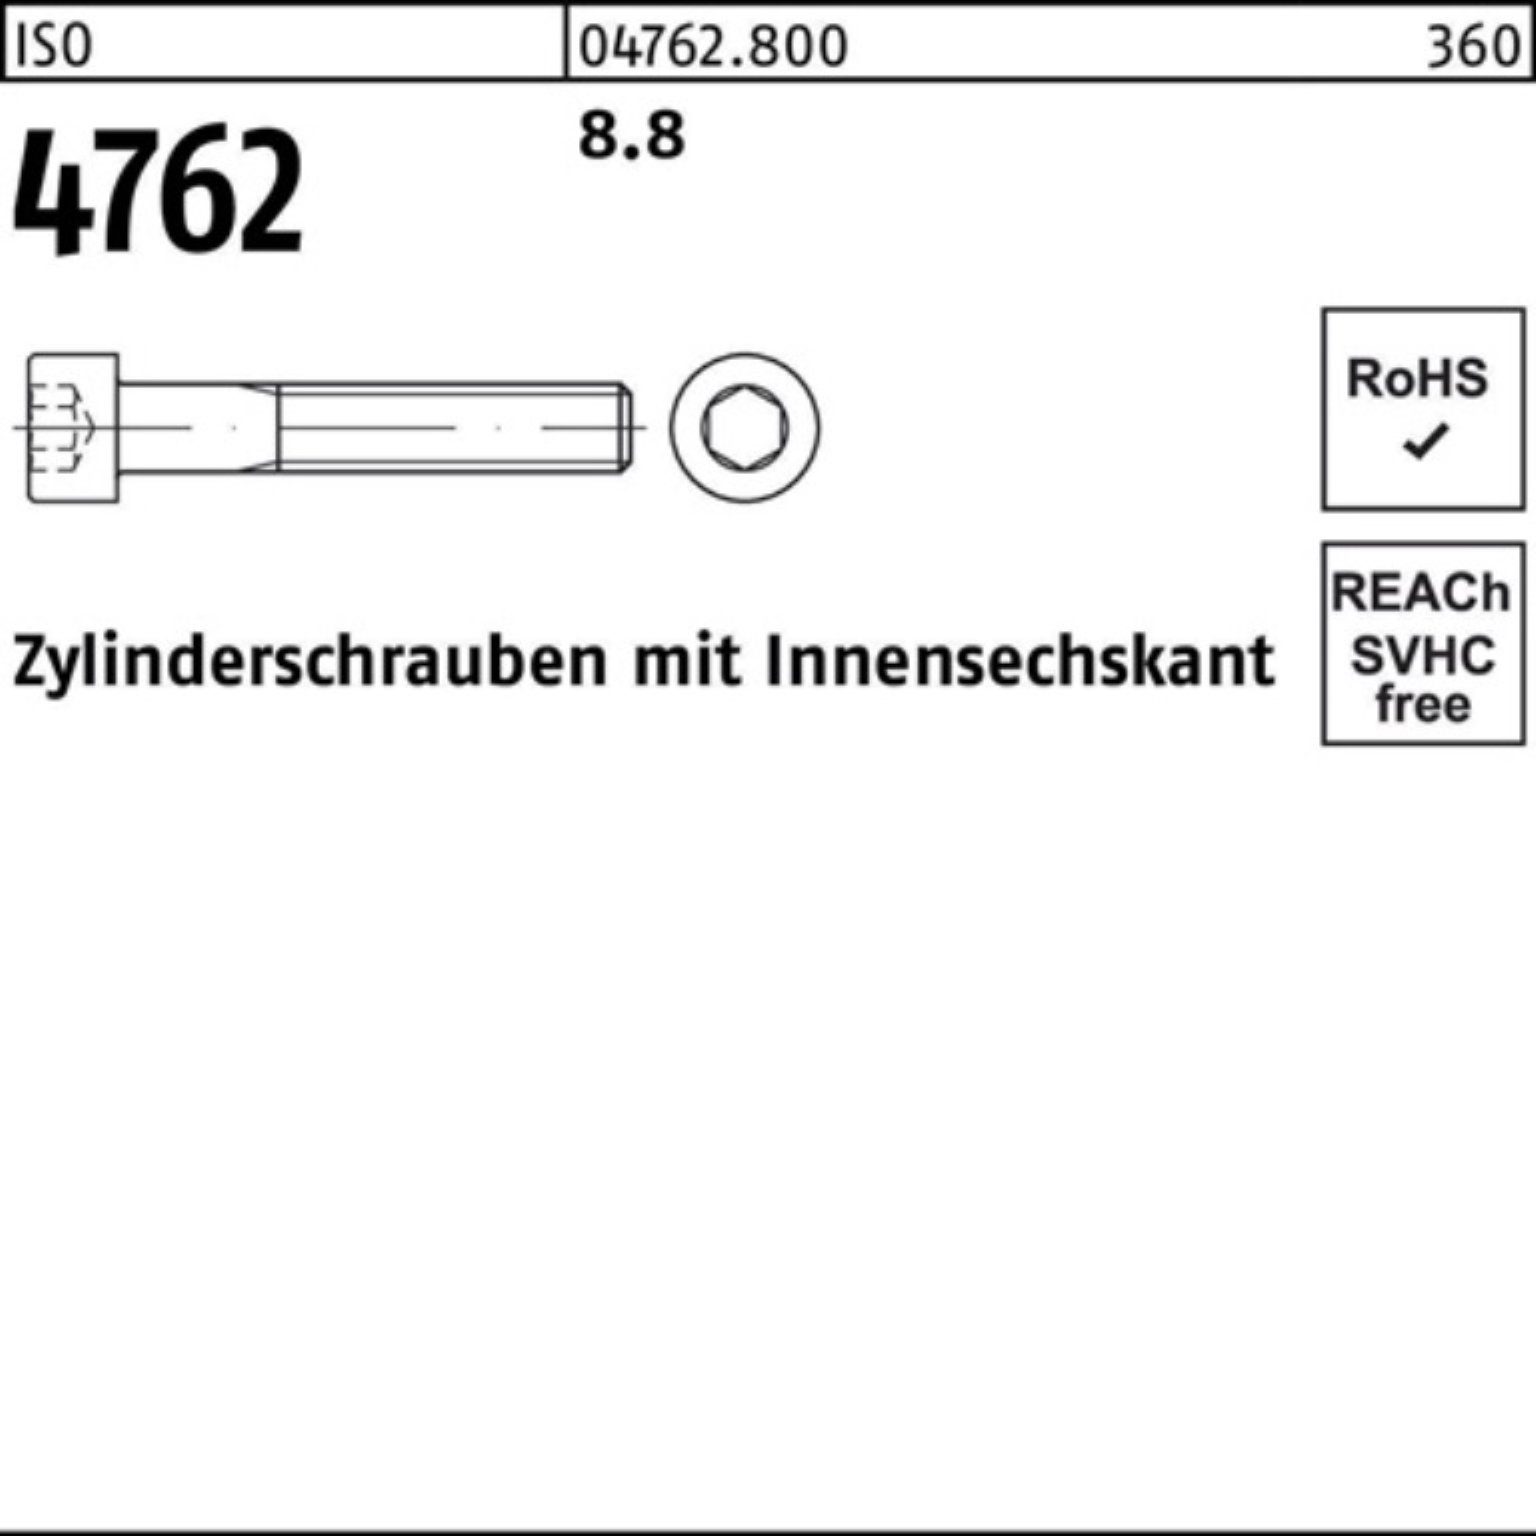 Pack Zylinderschraube 100er 100 ISO 115 4762 Innen-6kt 8.8 M5x Stück Zylinderschraube Reyher